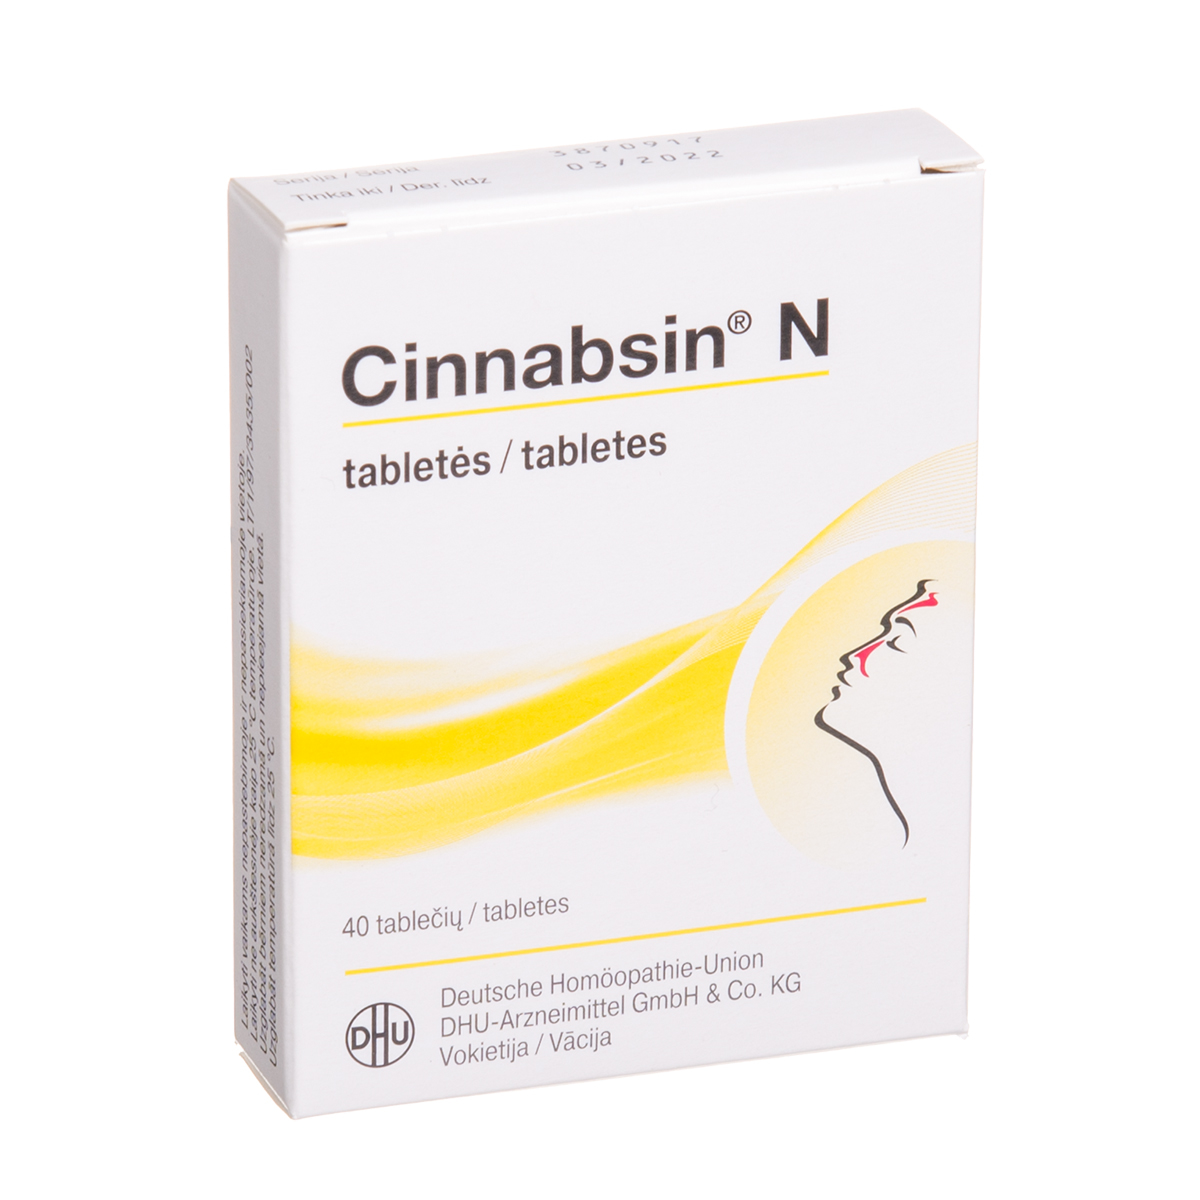 CINNABSIN N, tabletės, N40